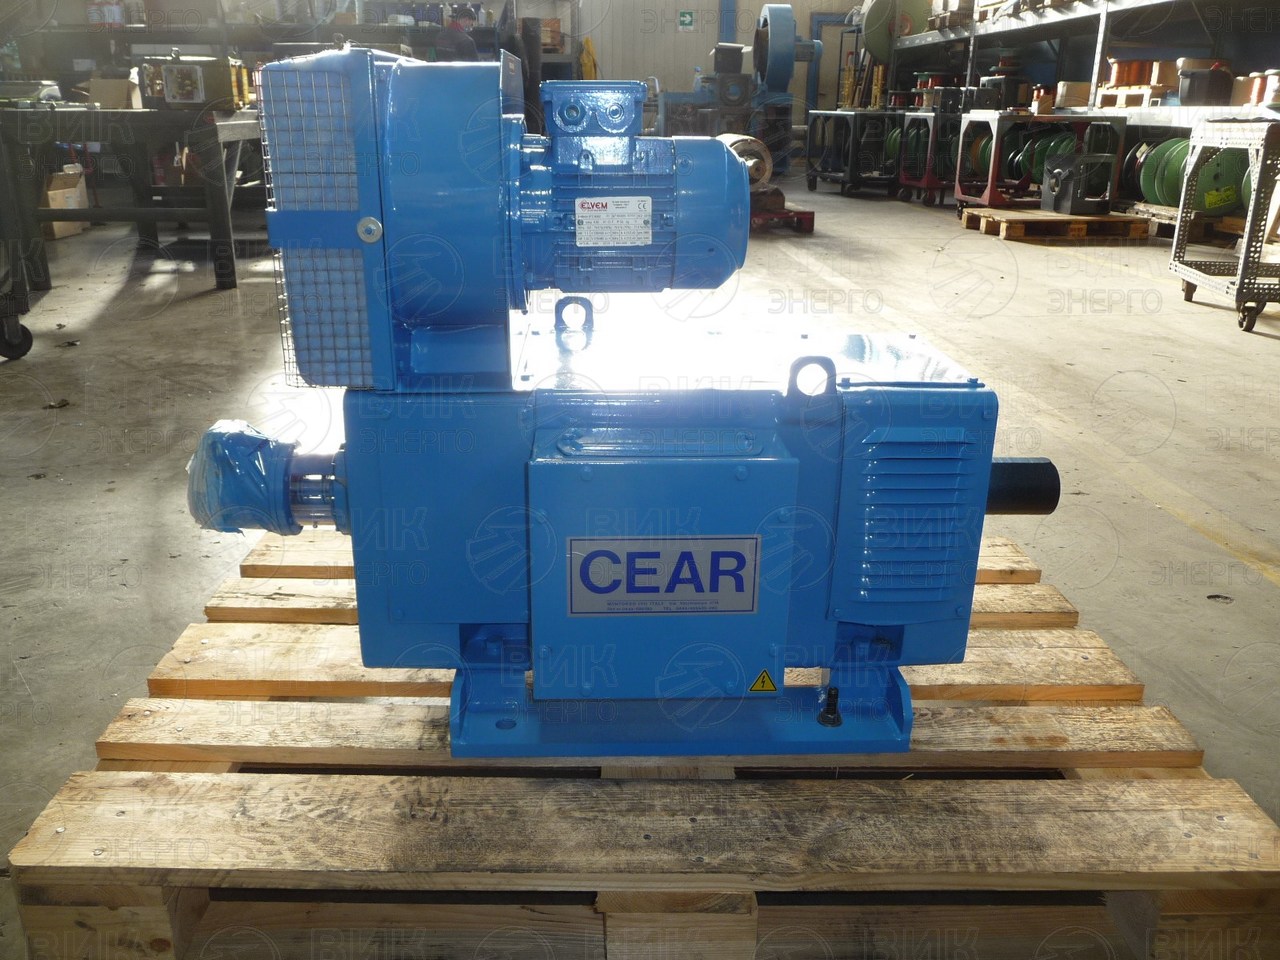 Поставка электромотора CEAR MGLC 160M